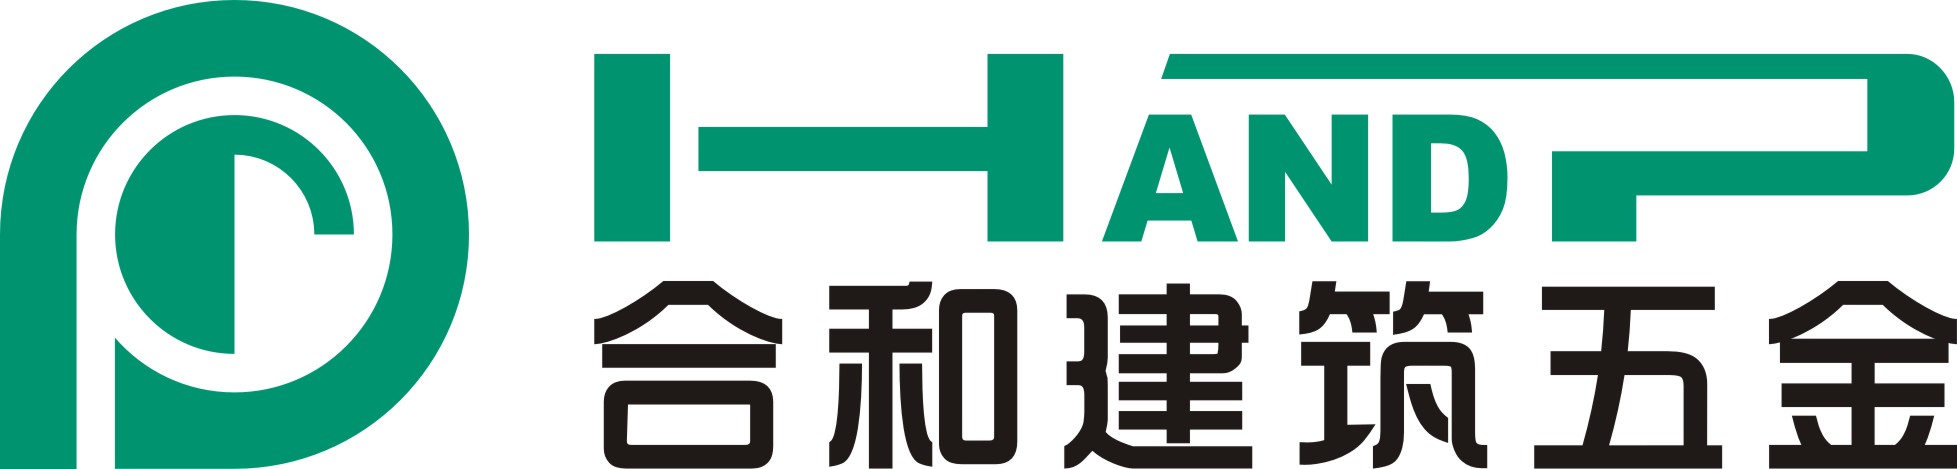 合和公司logo